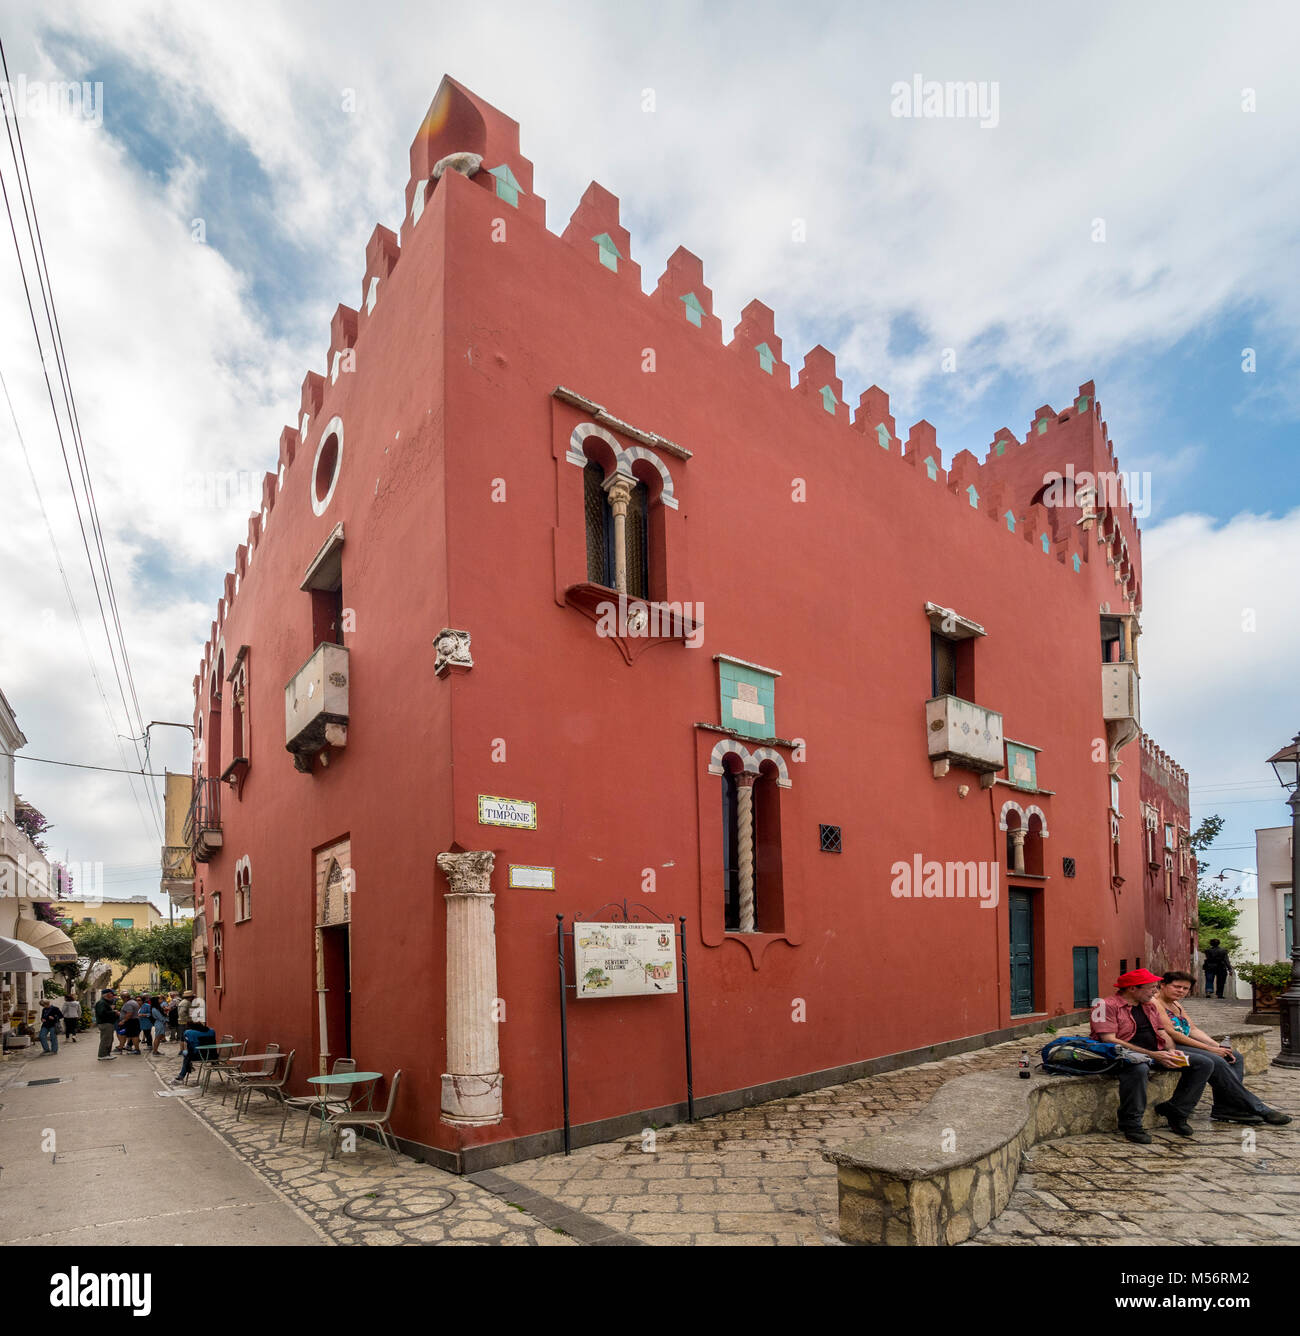 Casa Rossa, the Red House, Anacapri, Capri, Italy. Stock Photo